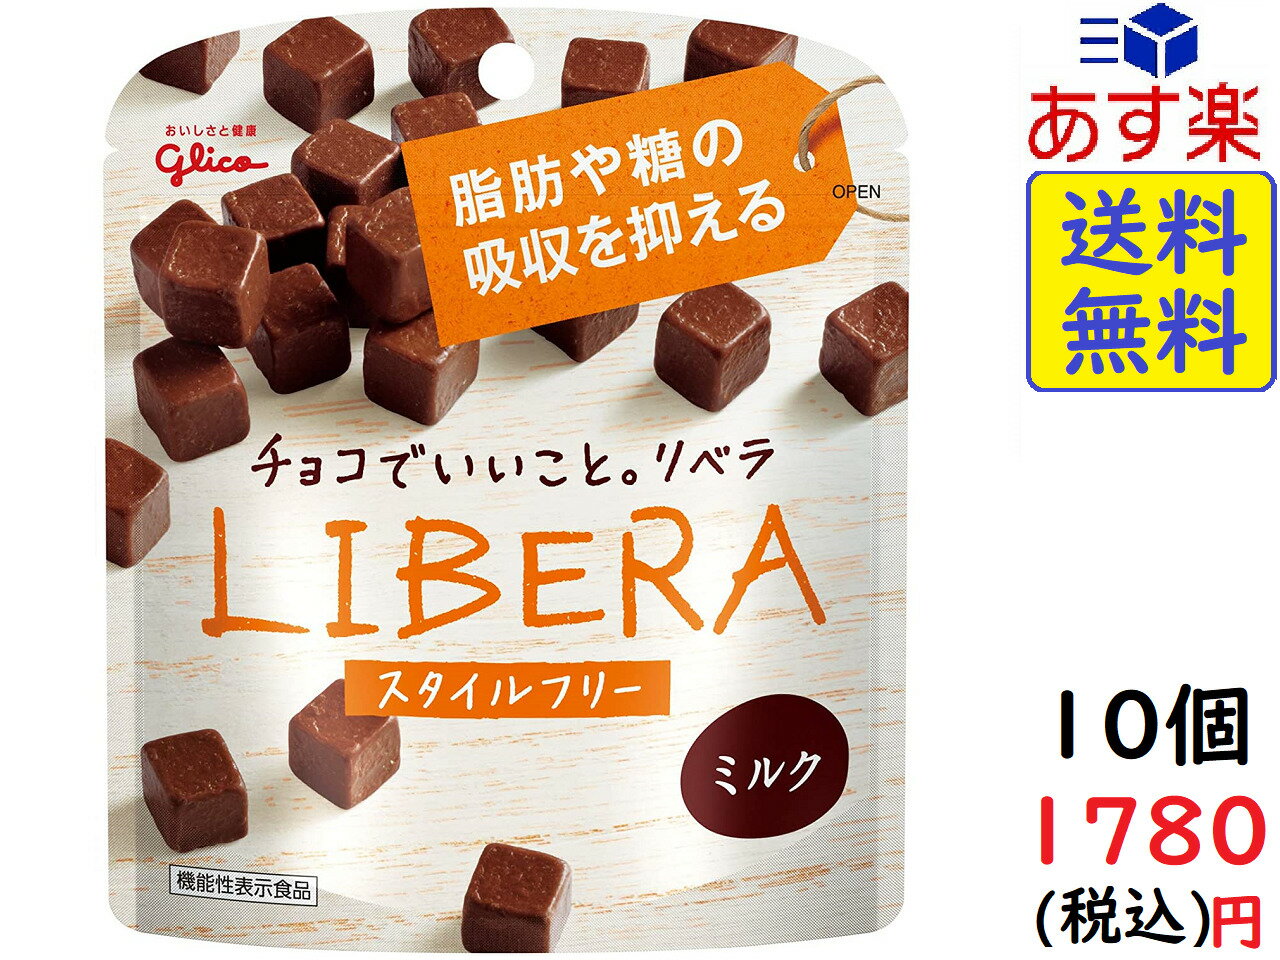 江崎グリコ LIBERA リベラ (ミルクチョコレート) 50g×10個賞味期限2021/11